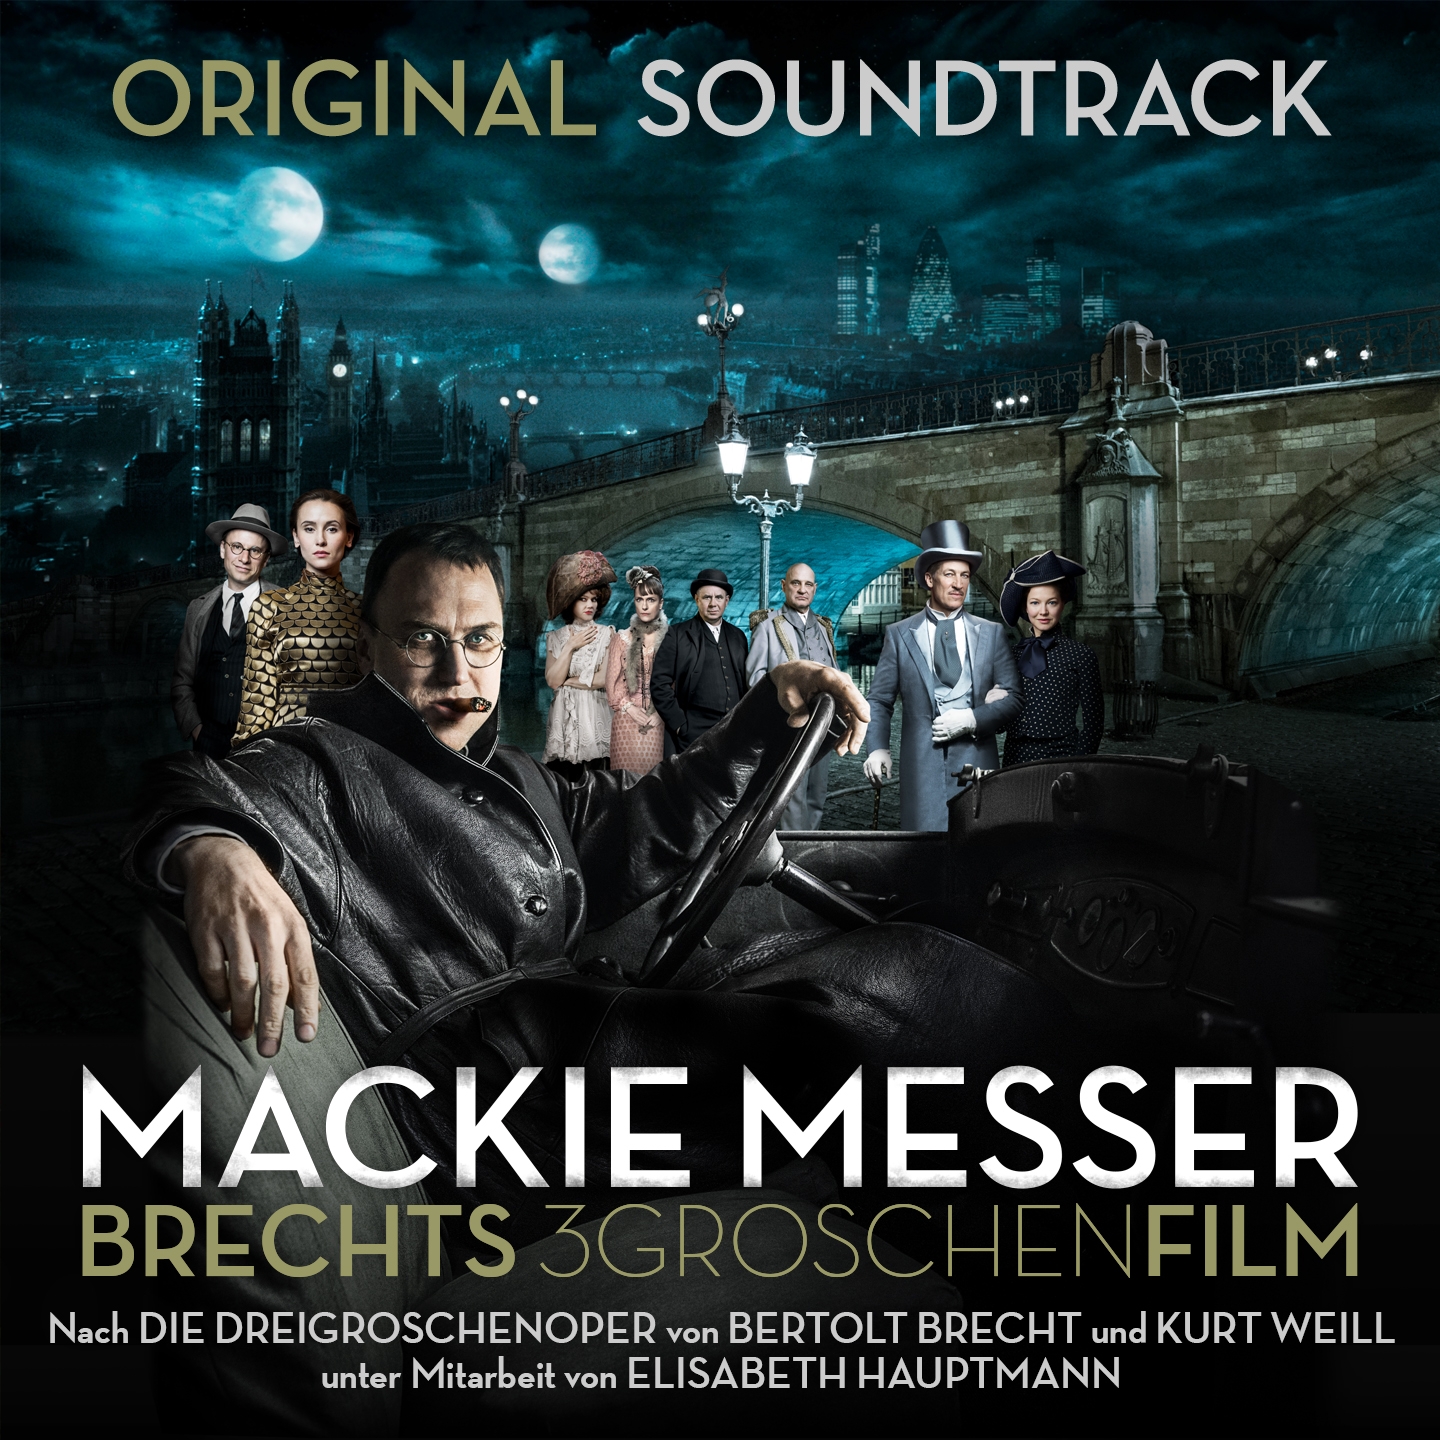 Mackie Messer: Brechts Dreigroschenfilm (Original Soundtrack)